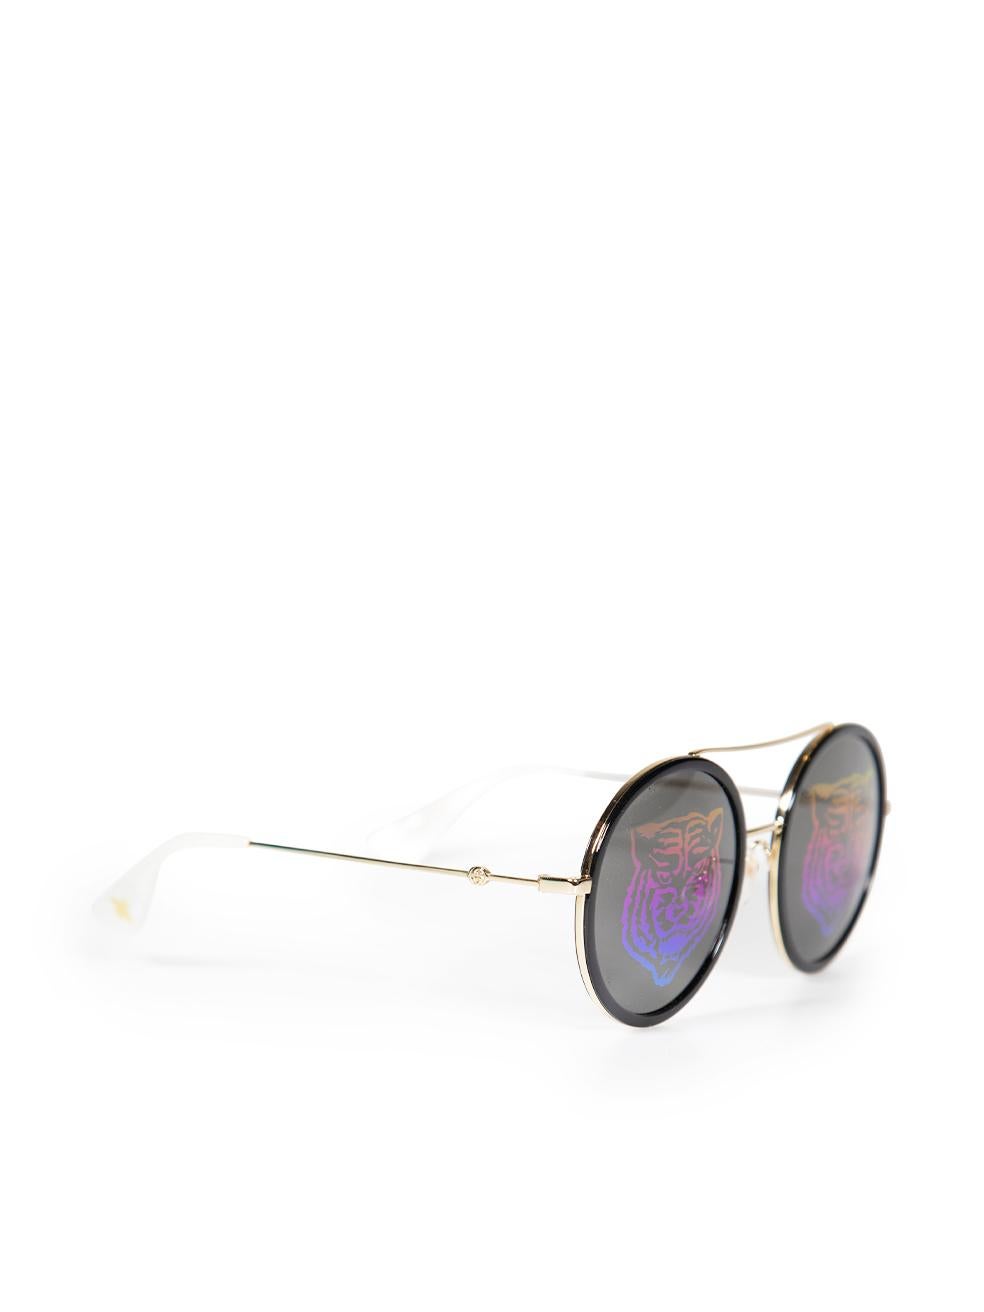 CONDIT ist sehr gut. Kaum sichtbare Abnutzungserscheinungen an der Sonnenbrille sind bei diesem gebrauchten Gucci Designer-Wiederverkaufsartikel zu erkennen. Diese Sonnenbrille wird mit Originaletui und Staubbeutel geliefert.
 
 
 
 Einzelheiten
 
